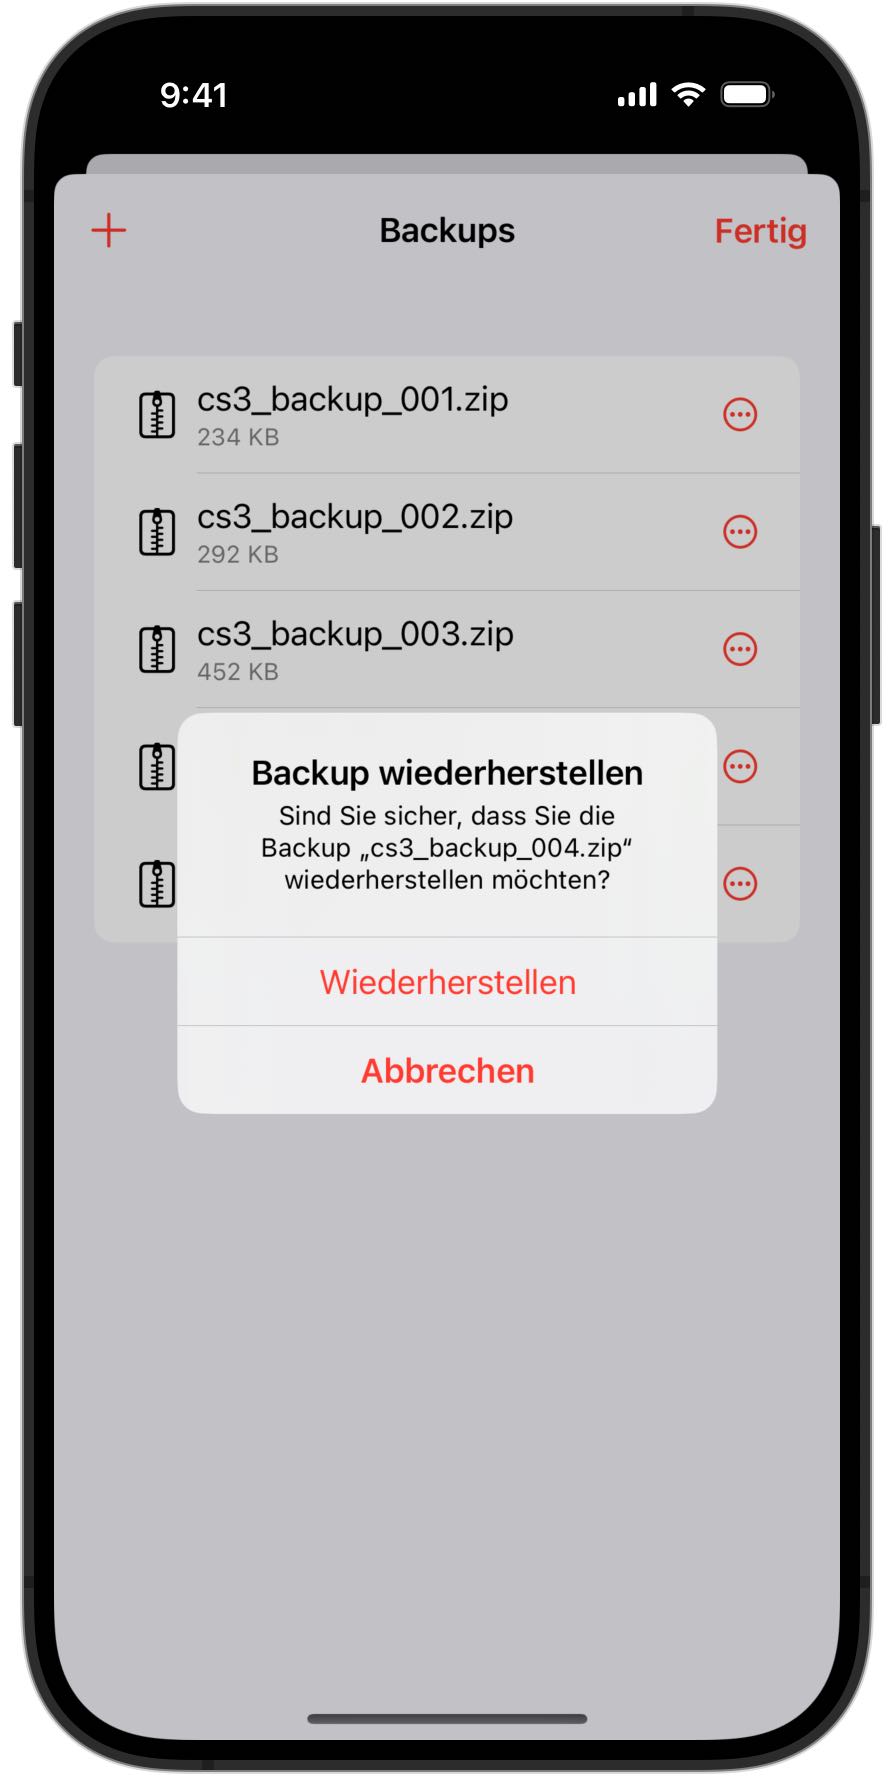 Screenshots eines iPhones, das vor der Wiederherstellung eines Backups in RailControl Pro um Bestätigung bittet